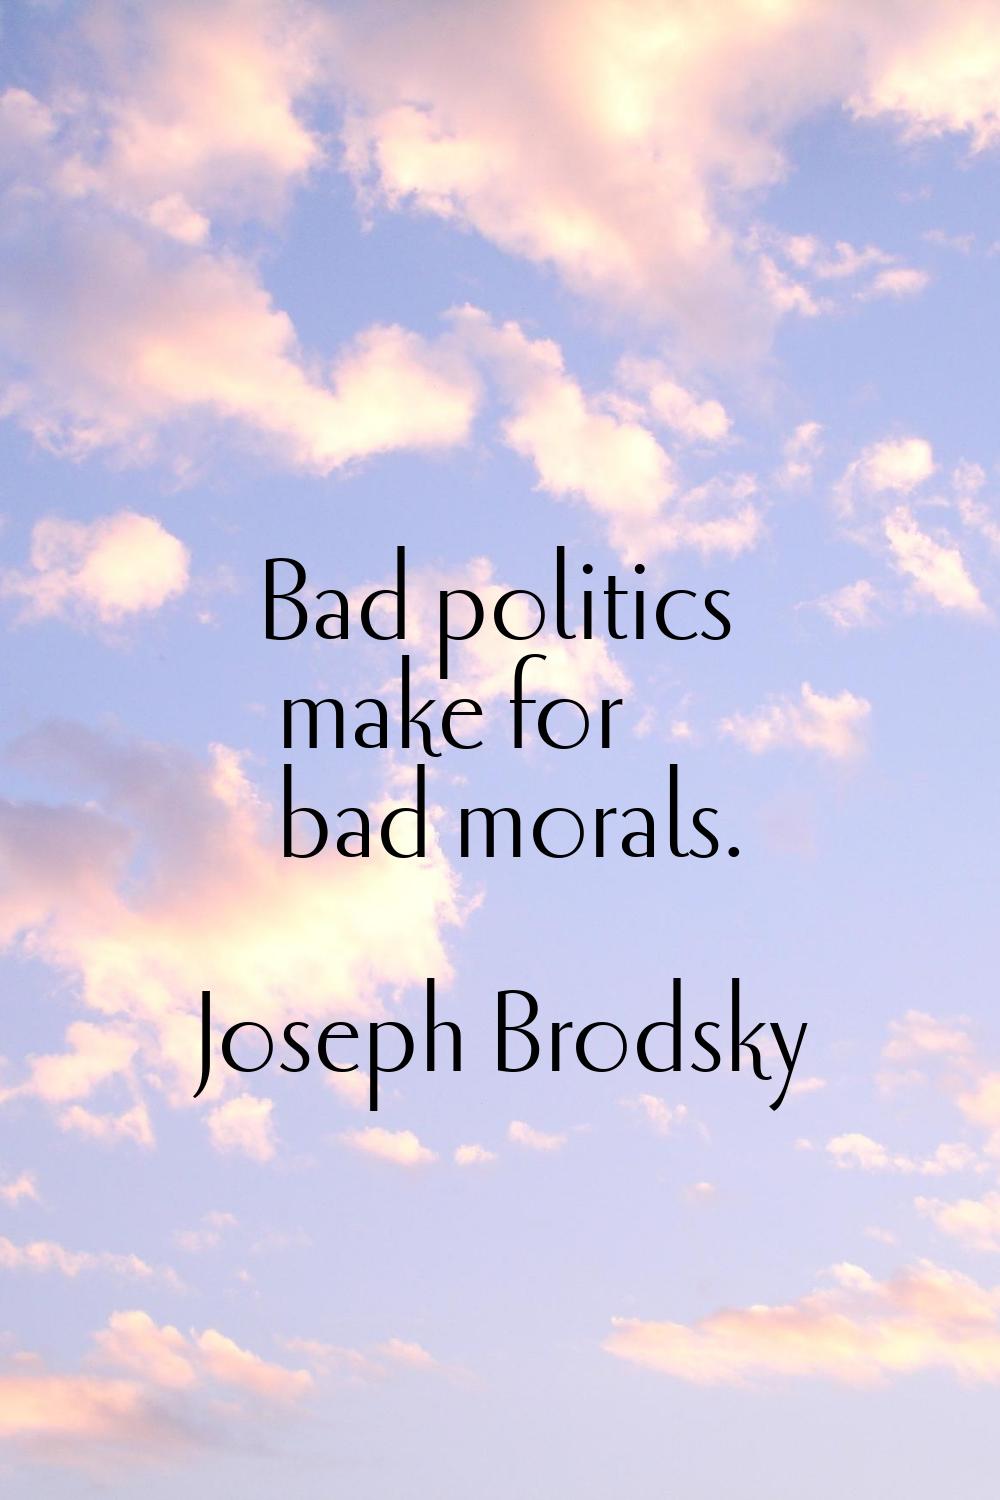 Bad politics make for bad morals.